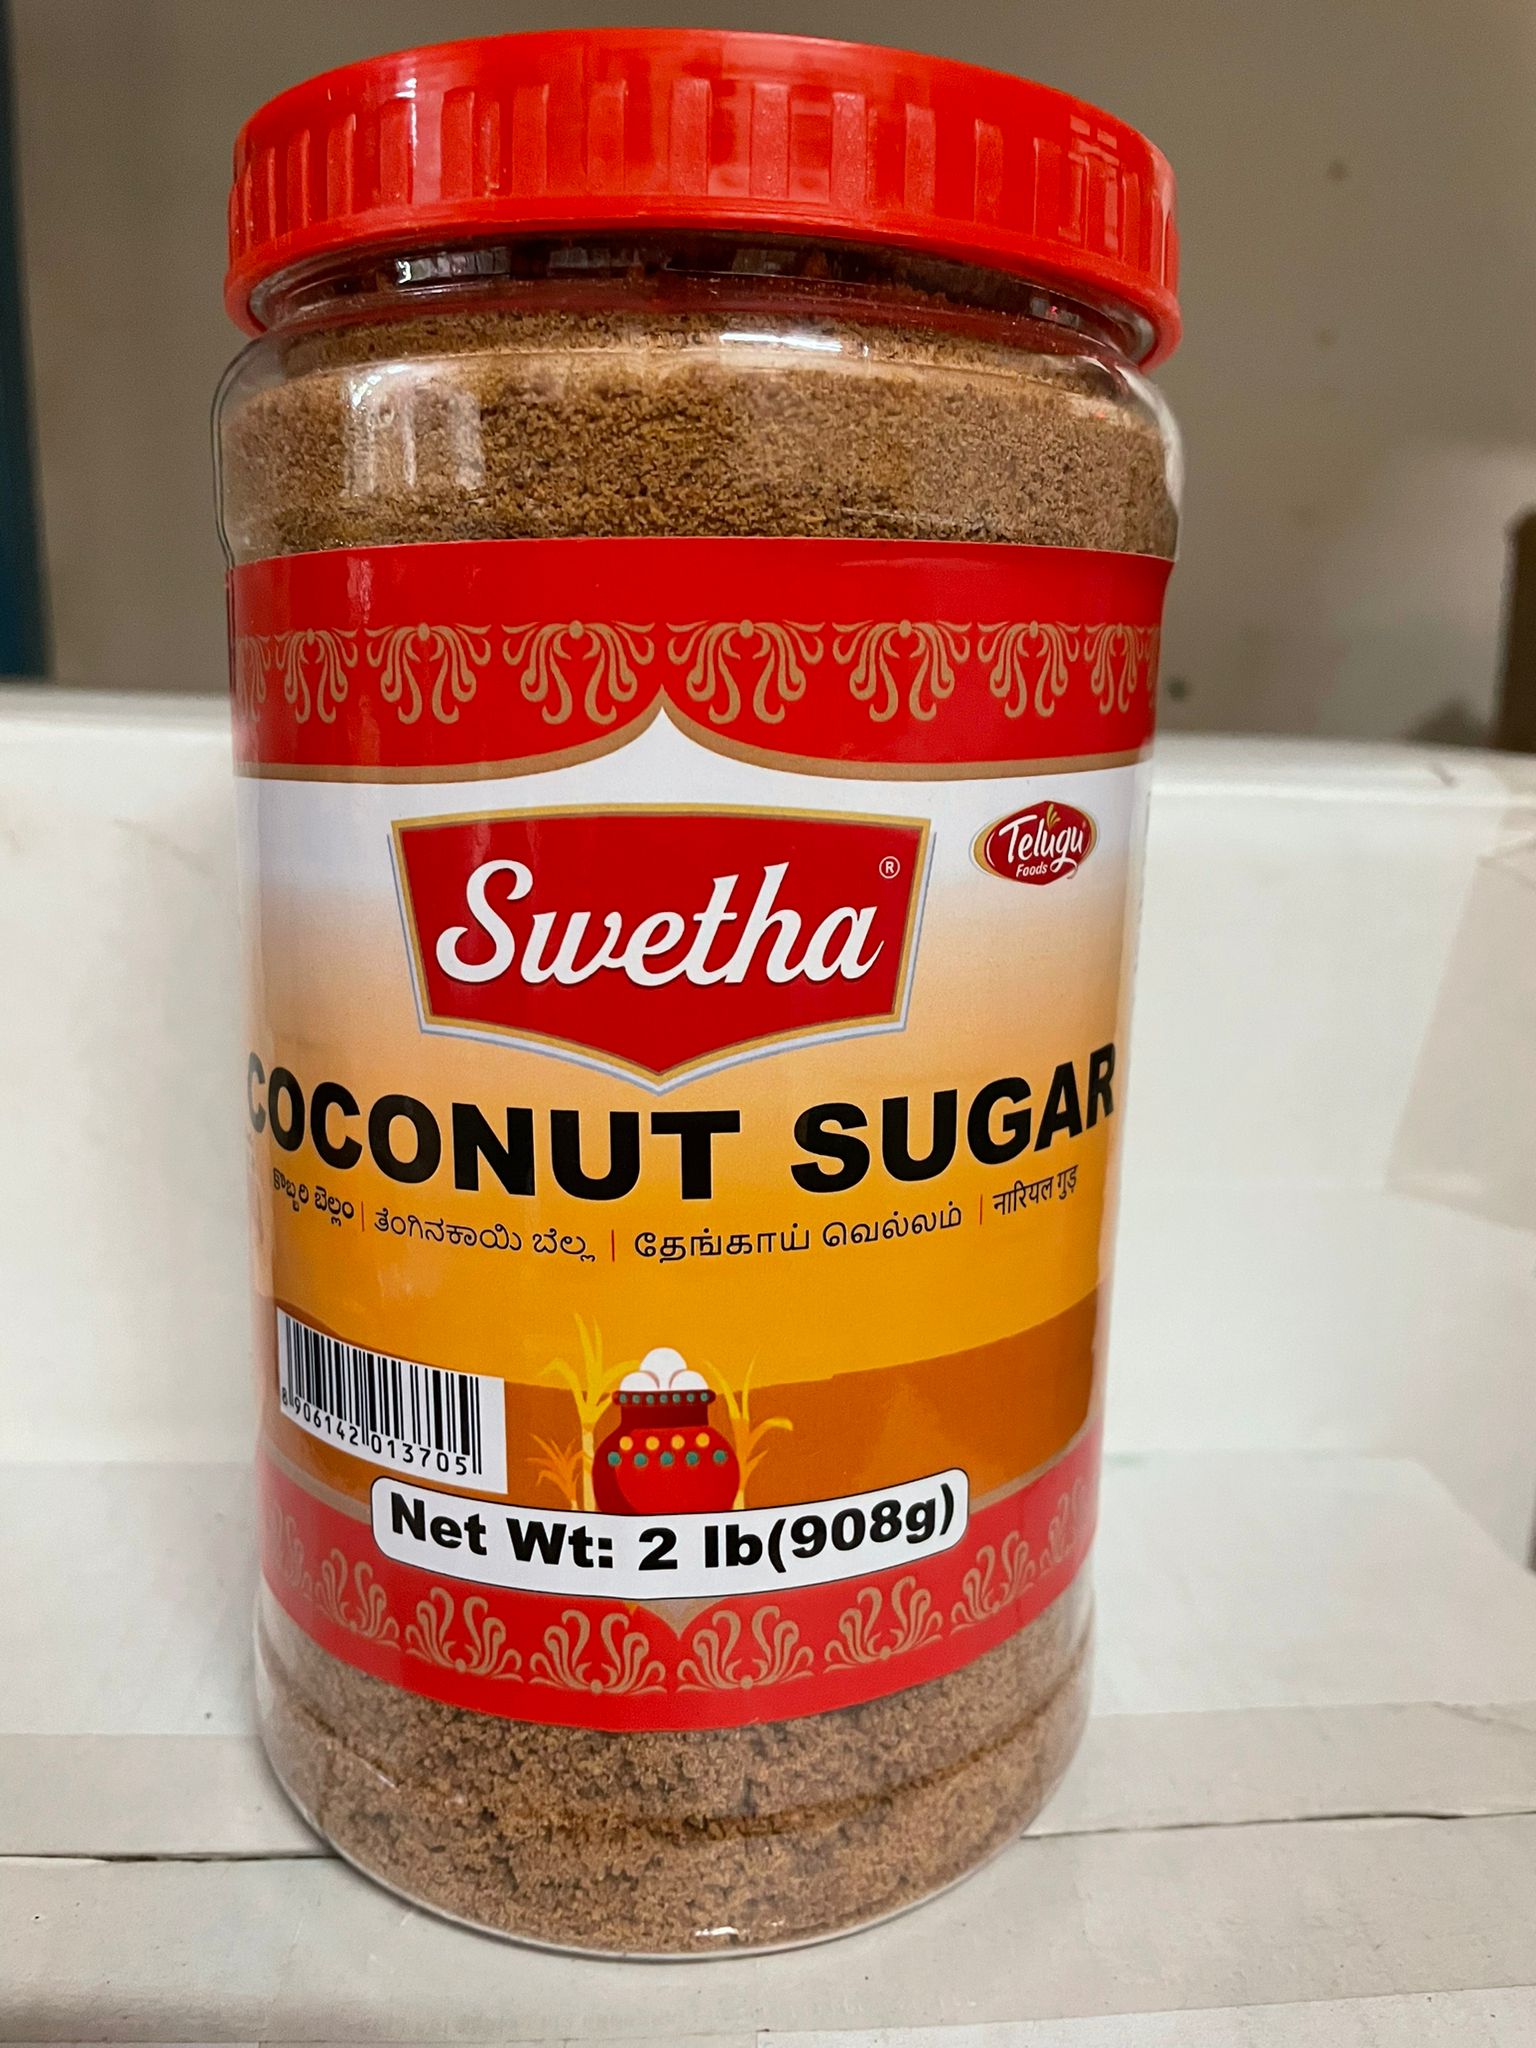 Swetha Coconut Sugar in Pet Jar, 2lb